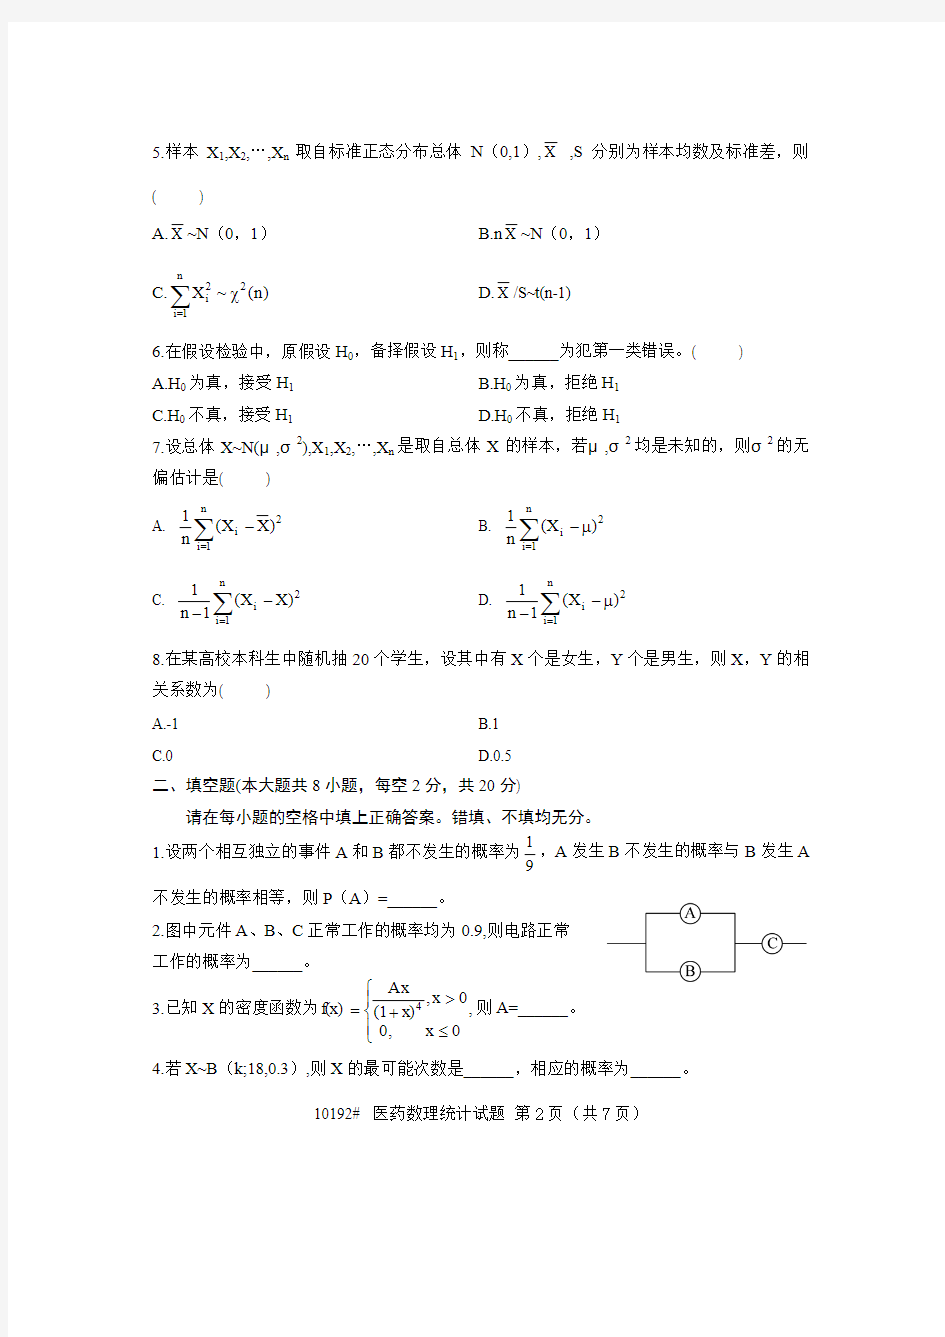 浙江省2009年10月高等教育自学考试 医药数理统计试题 课程代码10192